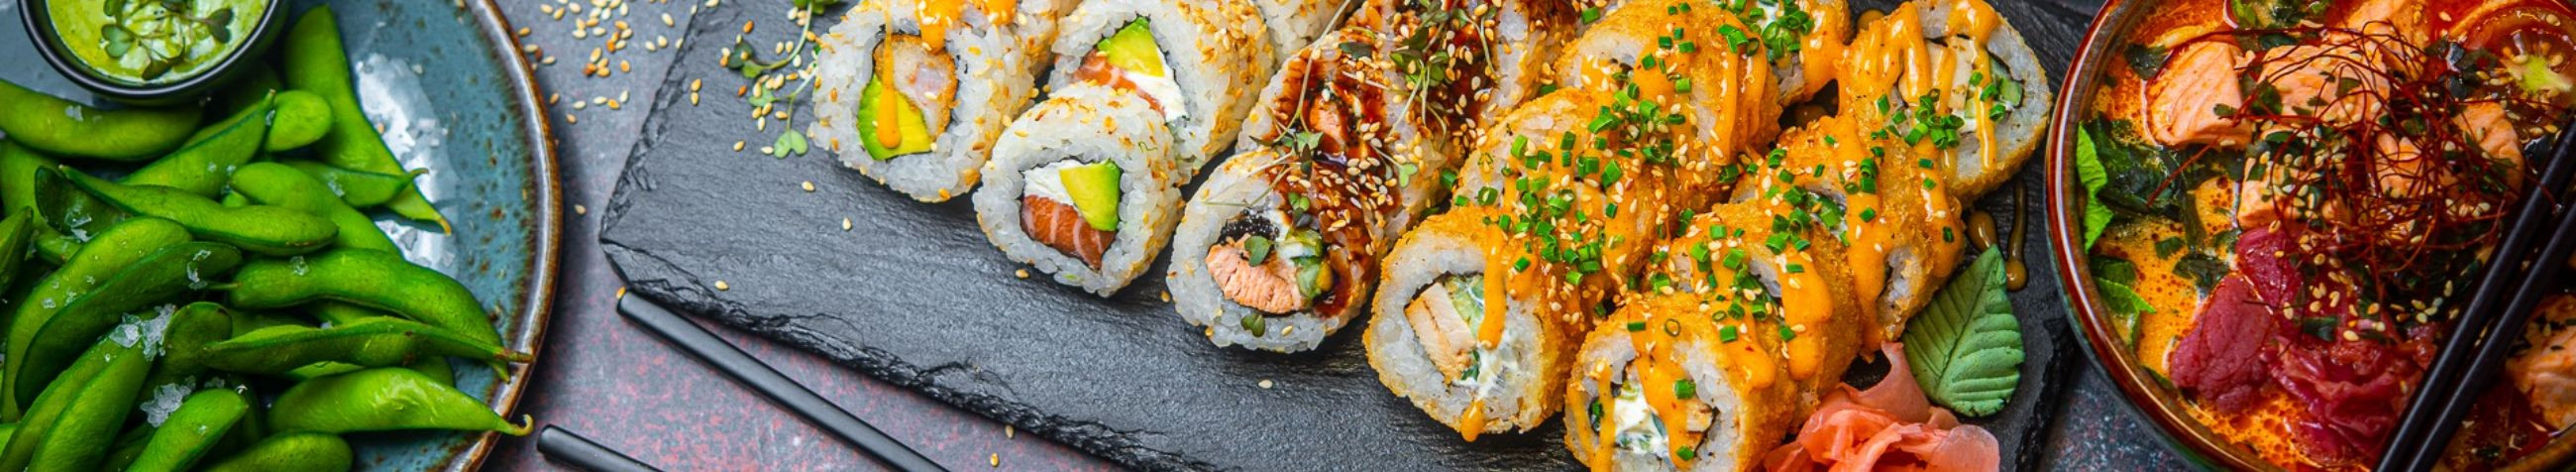 Taiko Sushibaar on spetsialiseerunud autentse Jaapani köögi pakkumisele, luues iga päev värskelt valmistatud sushiroogasid, mis pakuvad kliendile unustamatut maitseelamust.